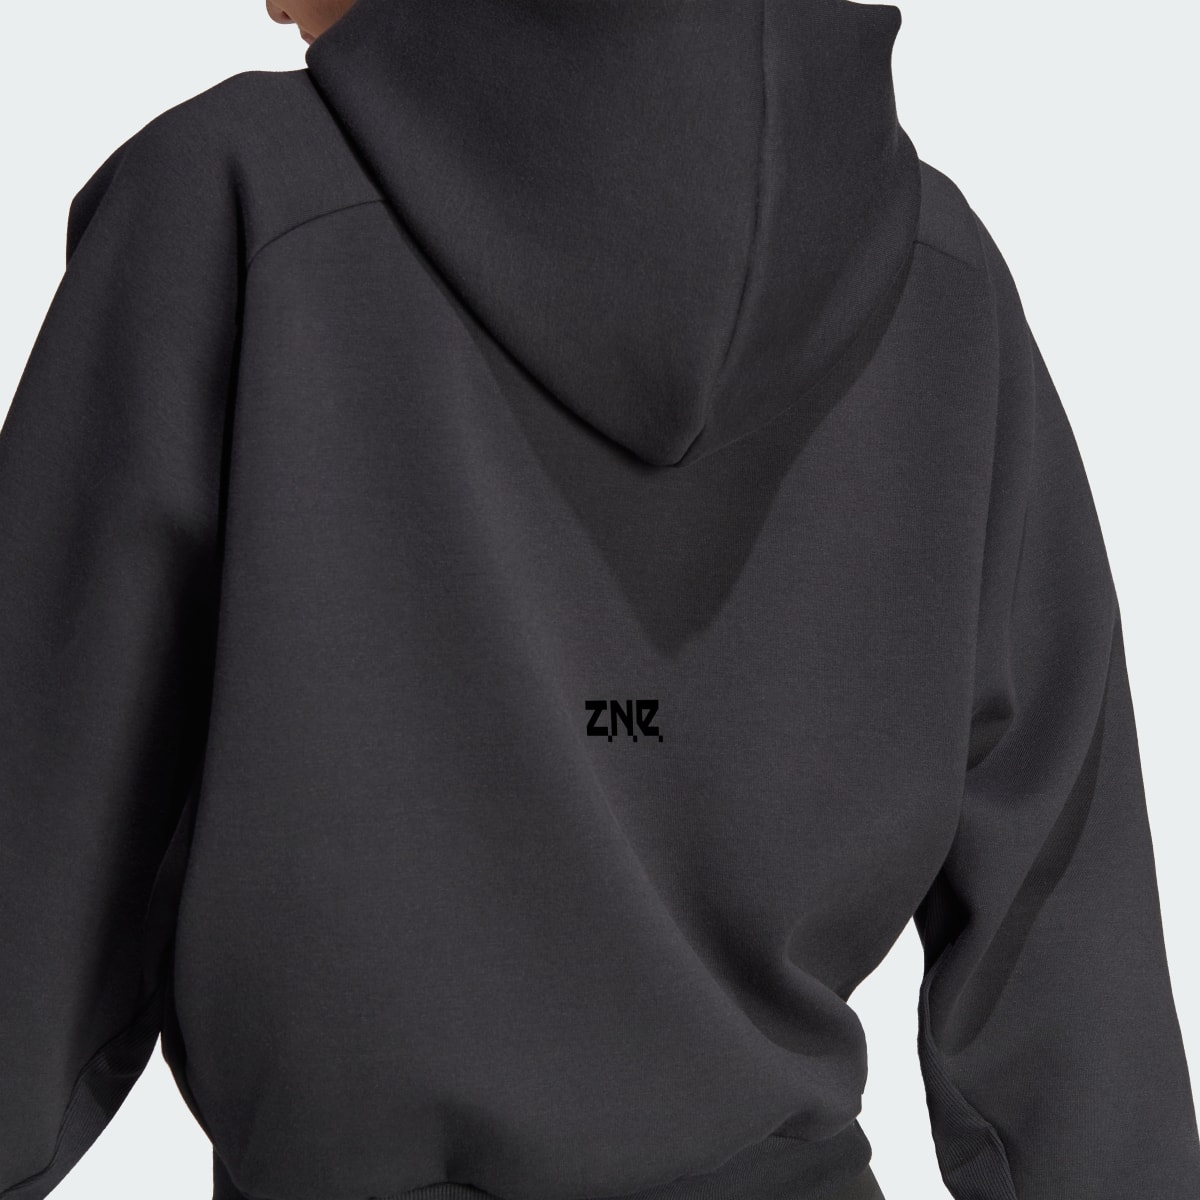 Adidas Z.N.E. Full-Zip Hoodie. 6